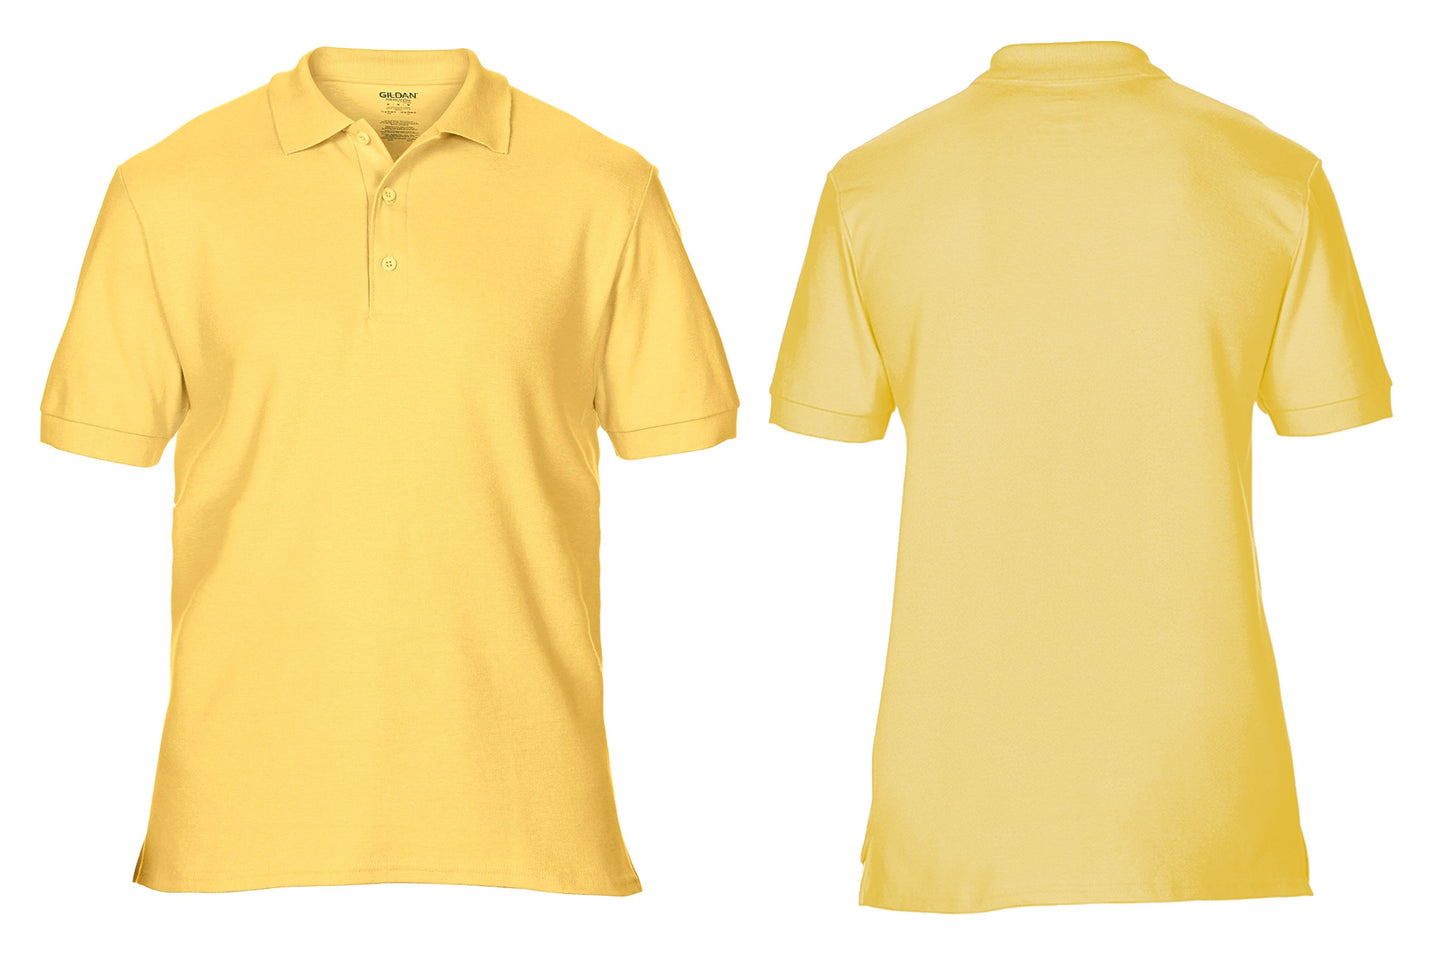 GD042 Premium Cotton® double piqué sport shirt colours - Trustsport